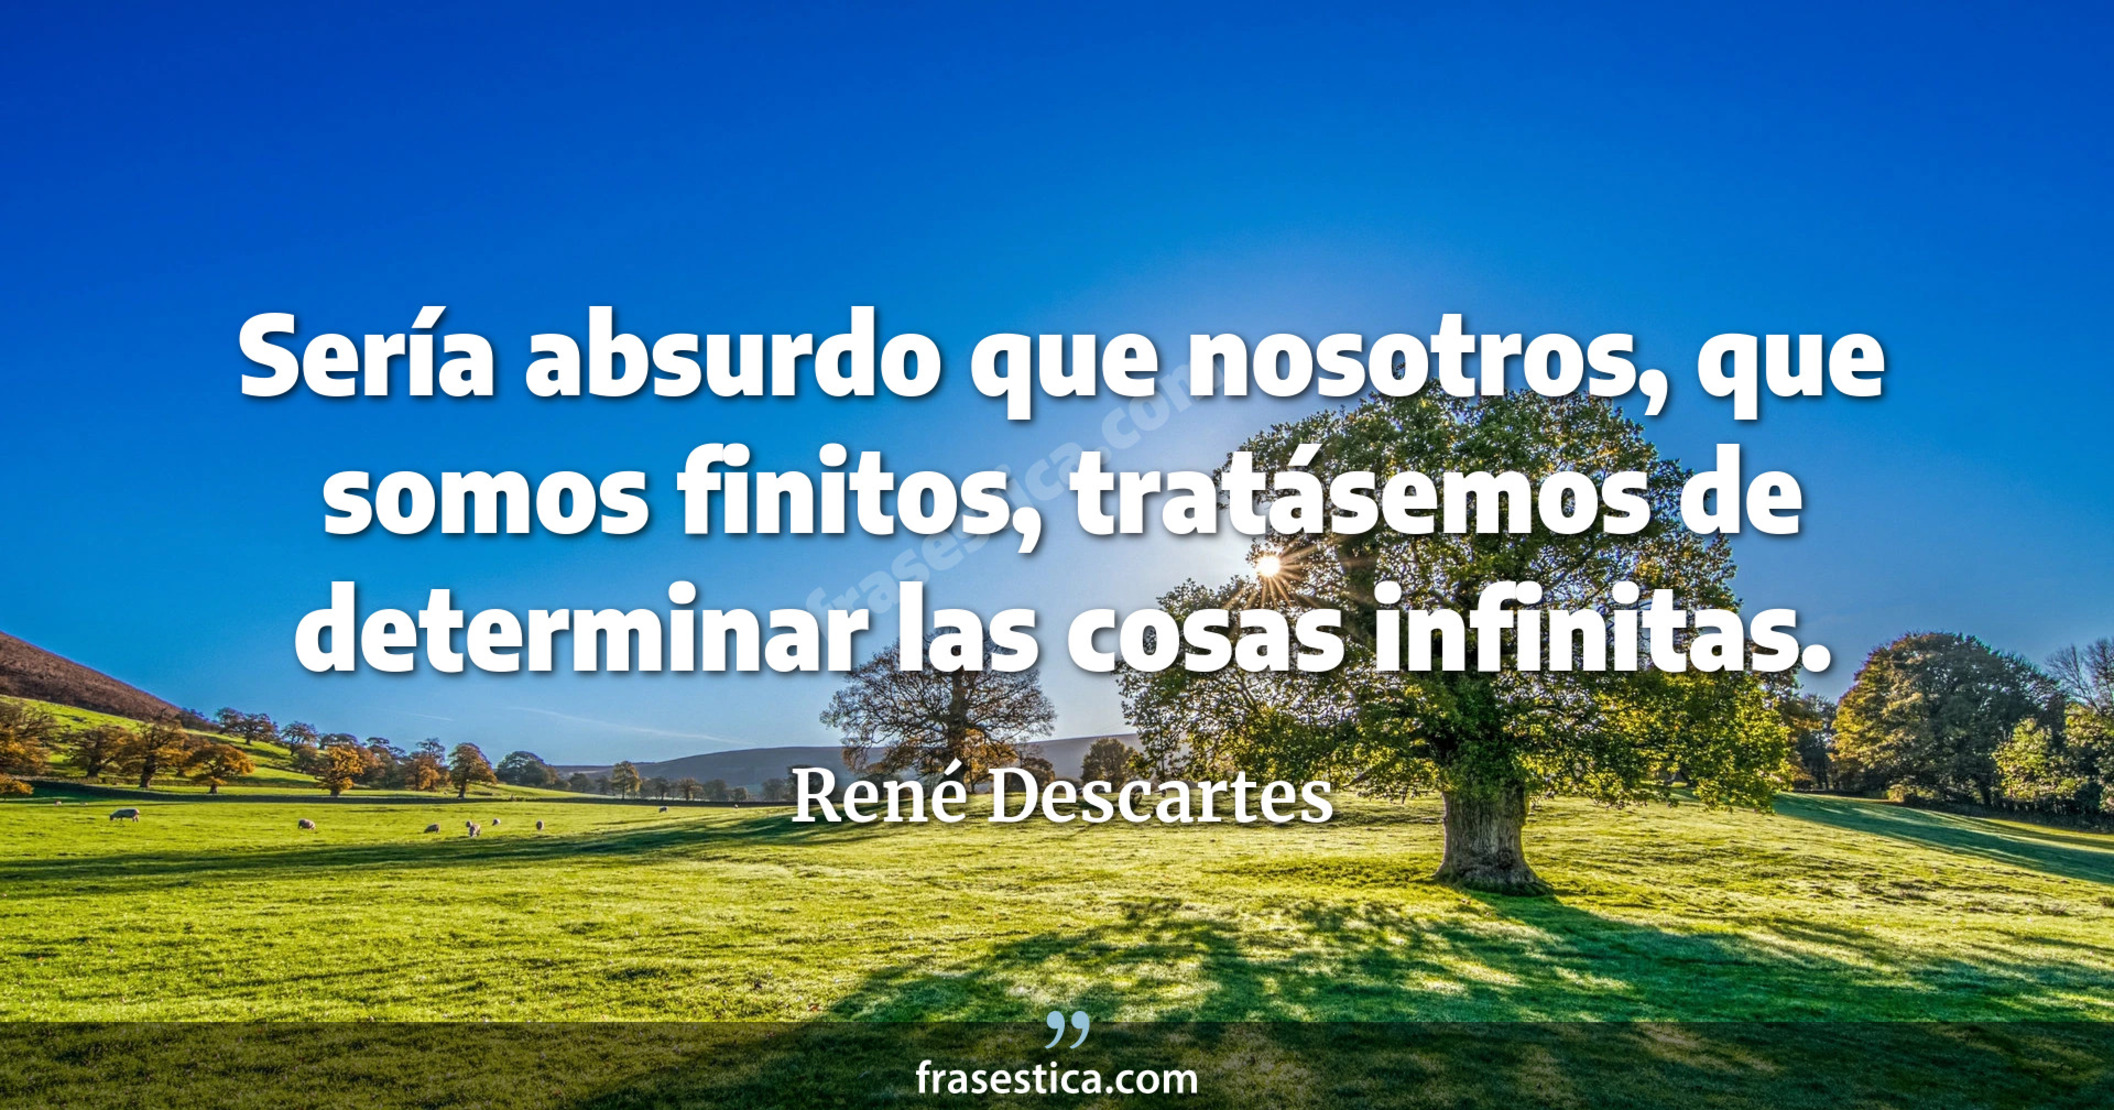 Sería absurdo que nosotros, que somos finitos, tratásemos de determinar las cosas infinitas. - René Descartes